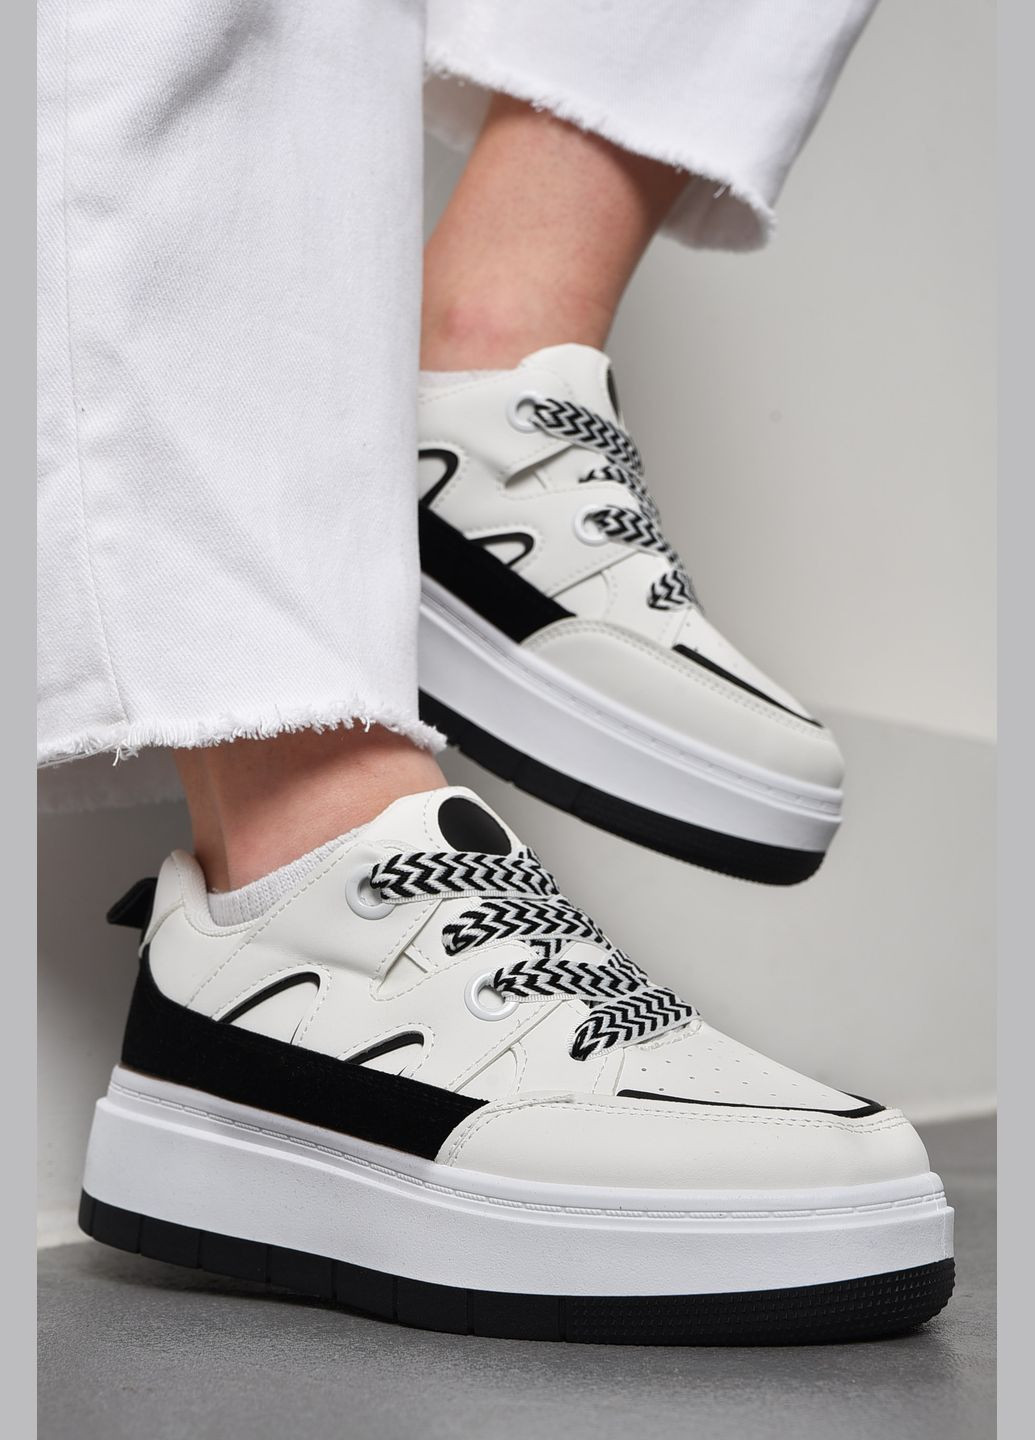 Чорно-білі осінні кросівки жіночі чорно-бiлого кольору на шнурівці Let's Shop